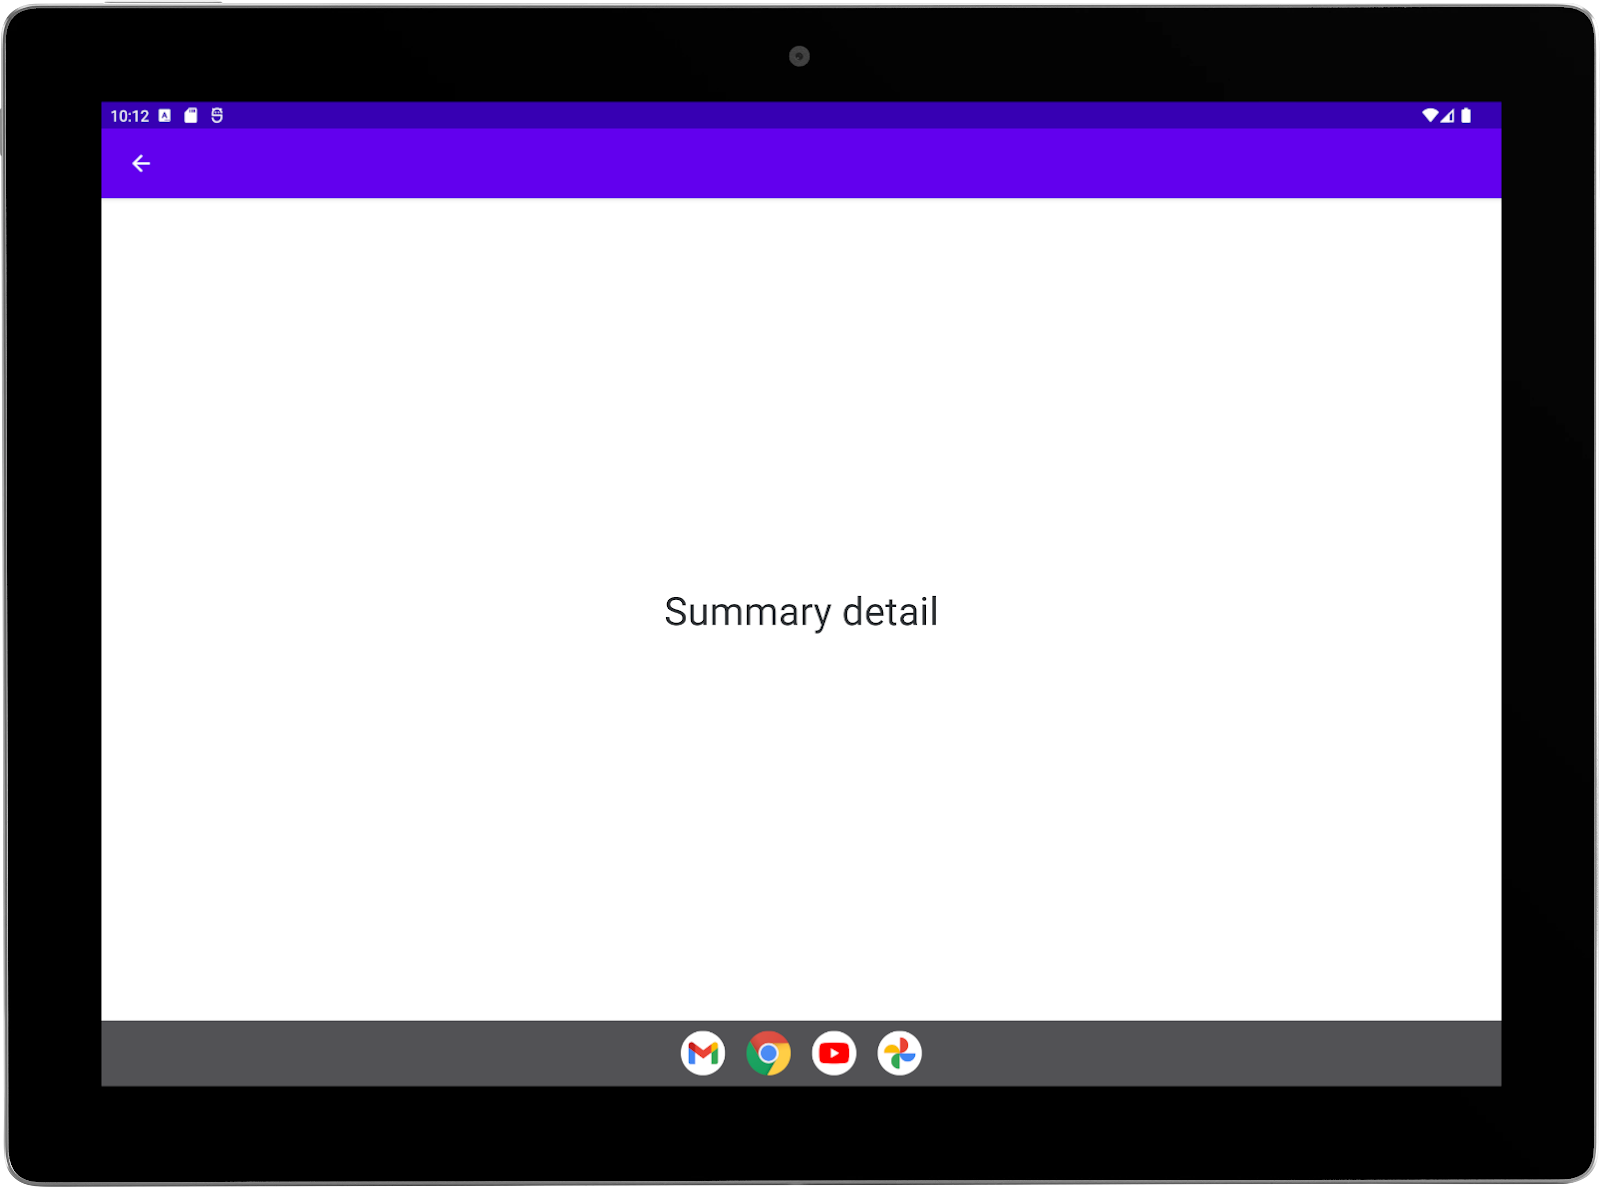 Tablet grande con la app de ejemplo ejecutándose en orientación horizontal. Pantalla completa de la actividad de resumen.